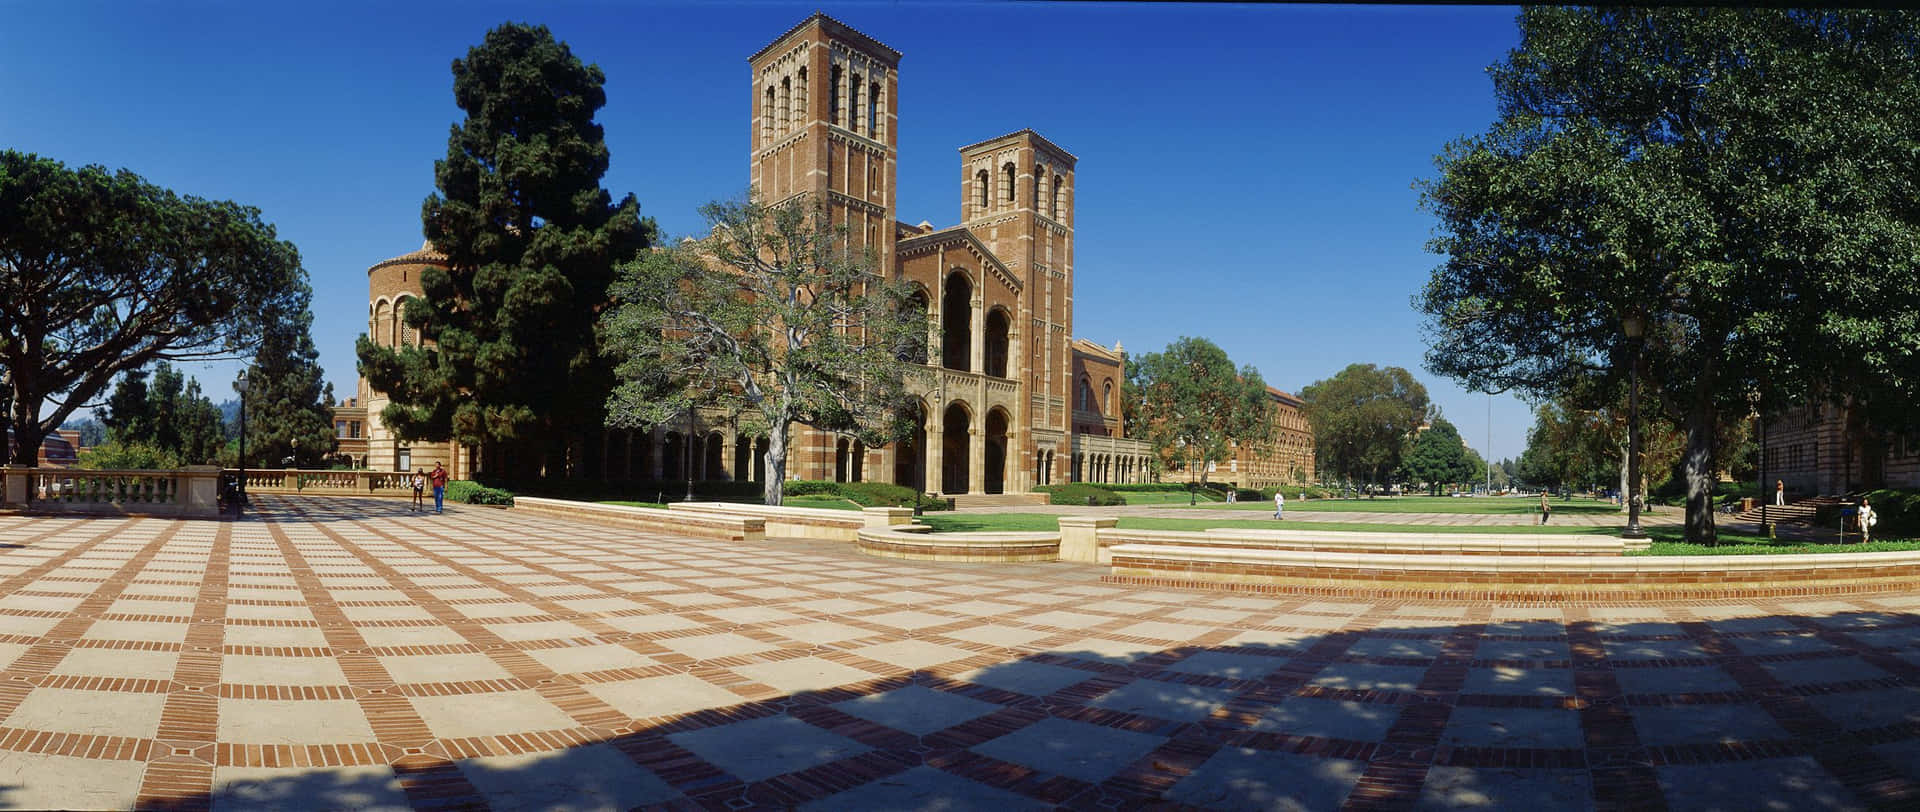 UCLA Campus er det perfekte studielivs repræsentation. Wallpaper